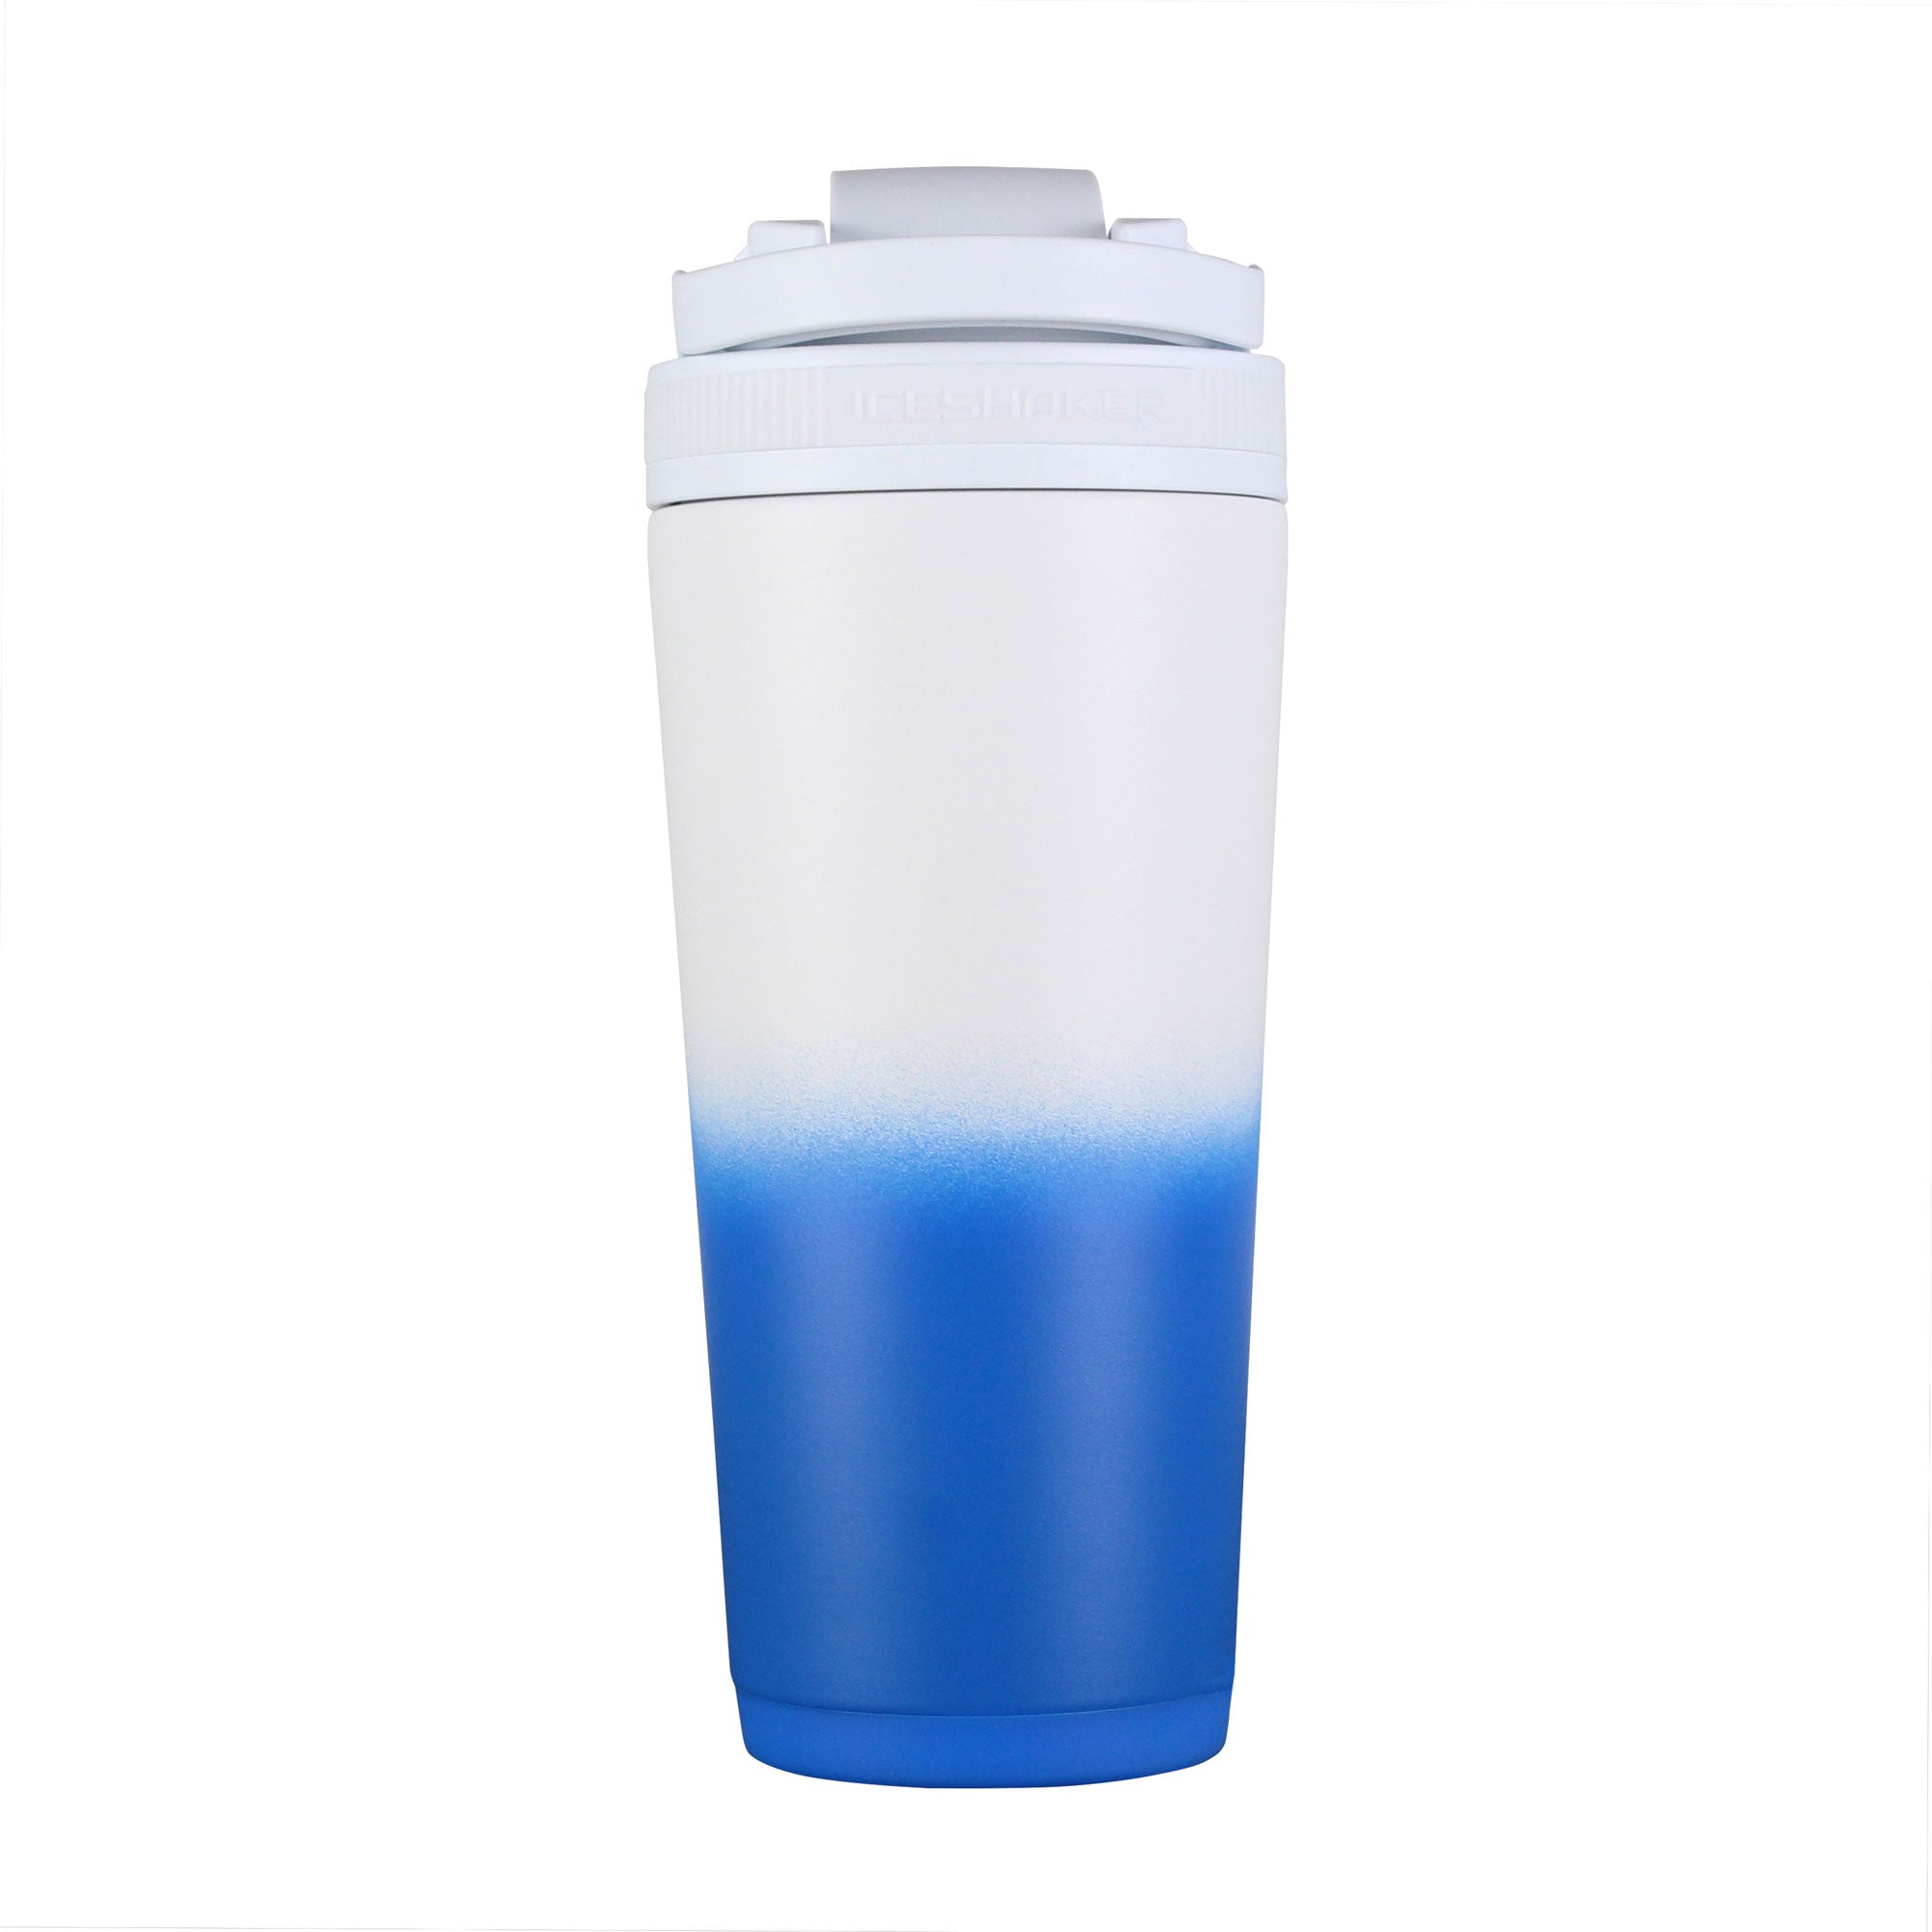 LEGENDARY Limited Edition KingSnake 26oz Insulated Shaker Bottle –